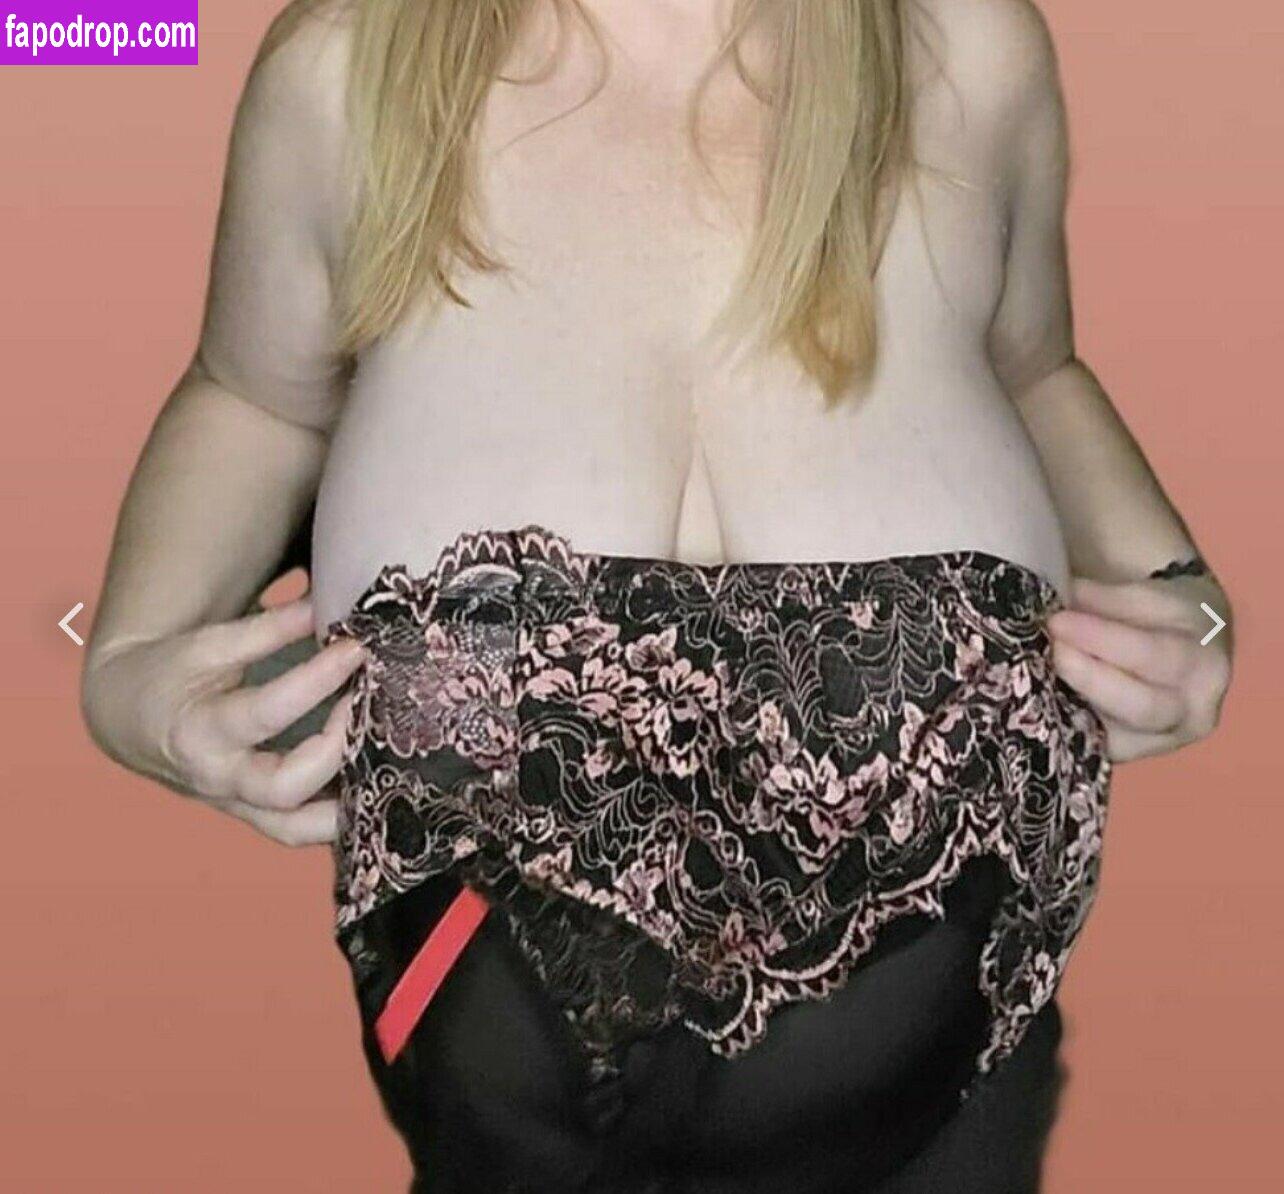 Kathy Boast / Huge Tits / kathyboast / meowkittykat1 leak of nude photo #0025 from OnlyFans or Patreon